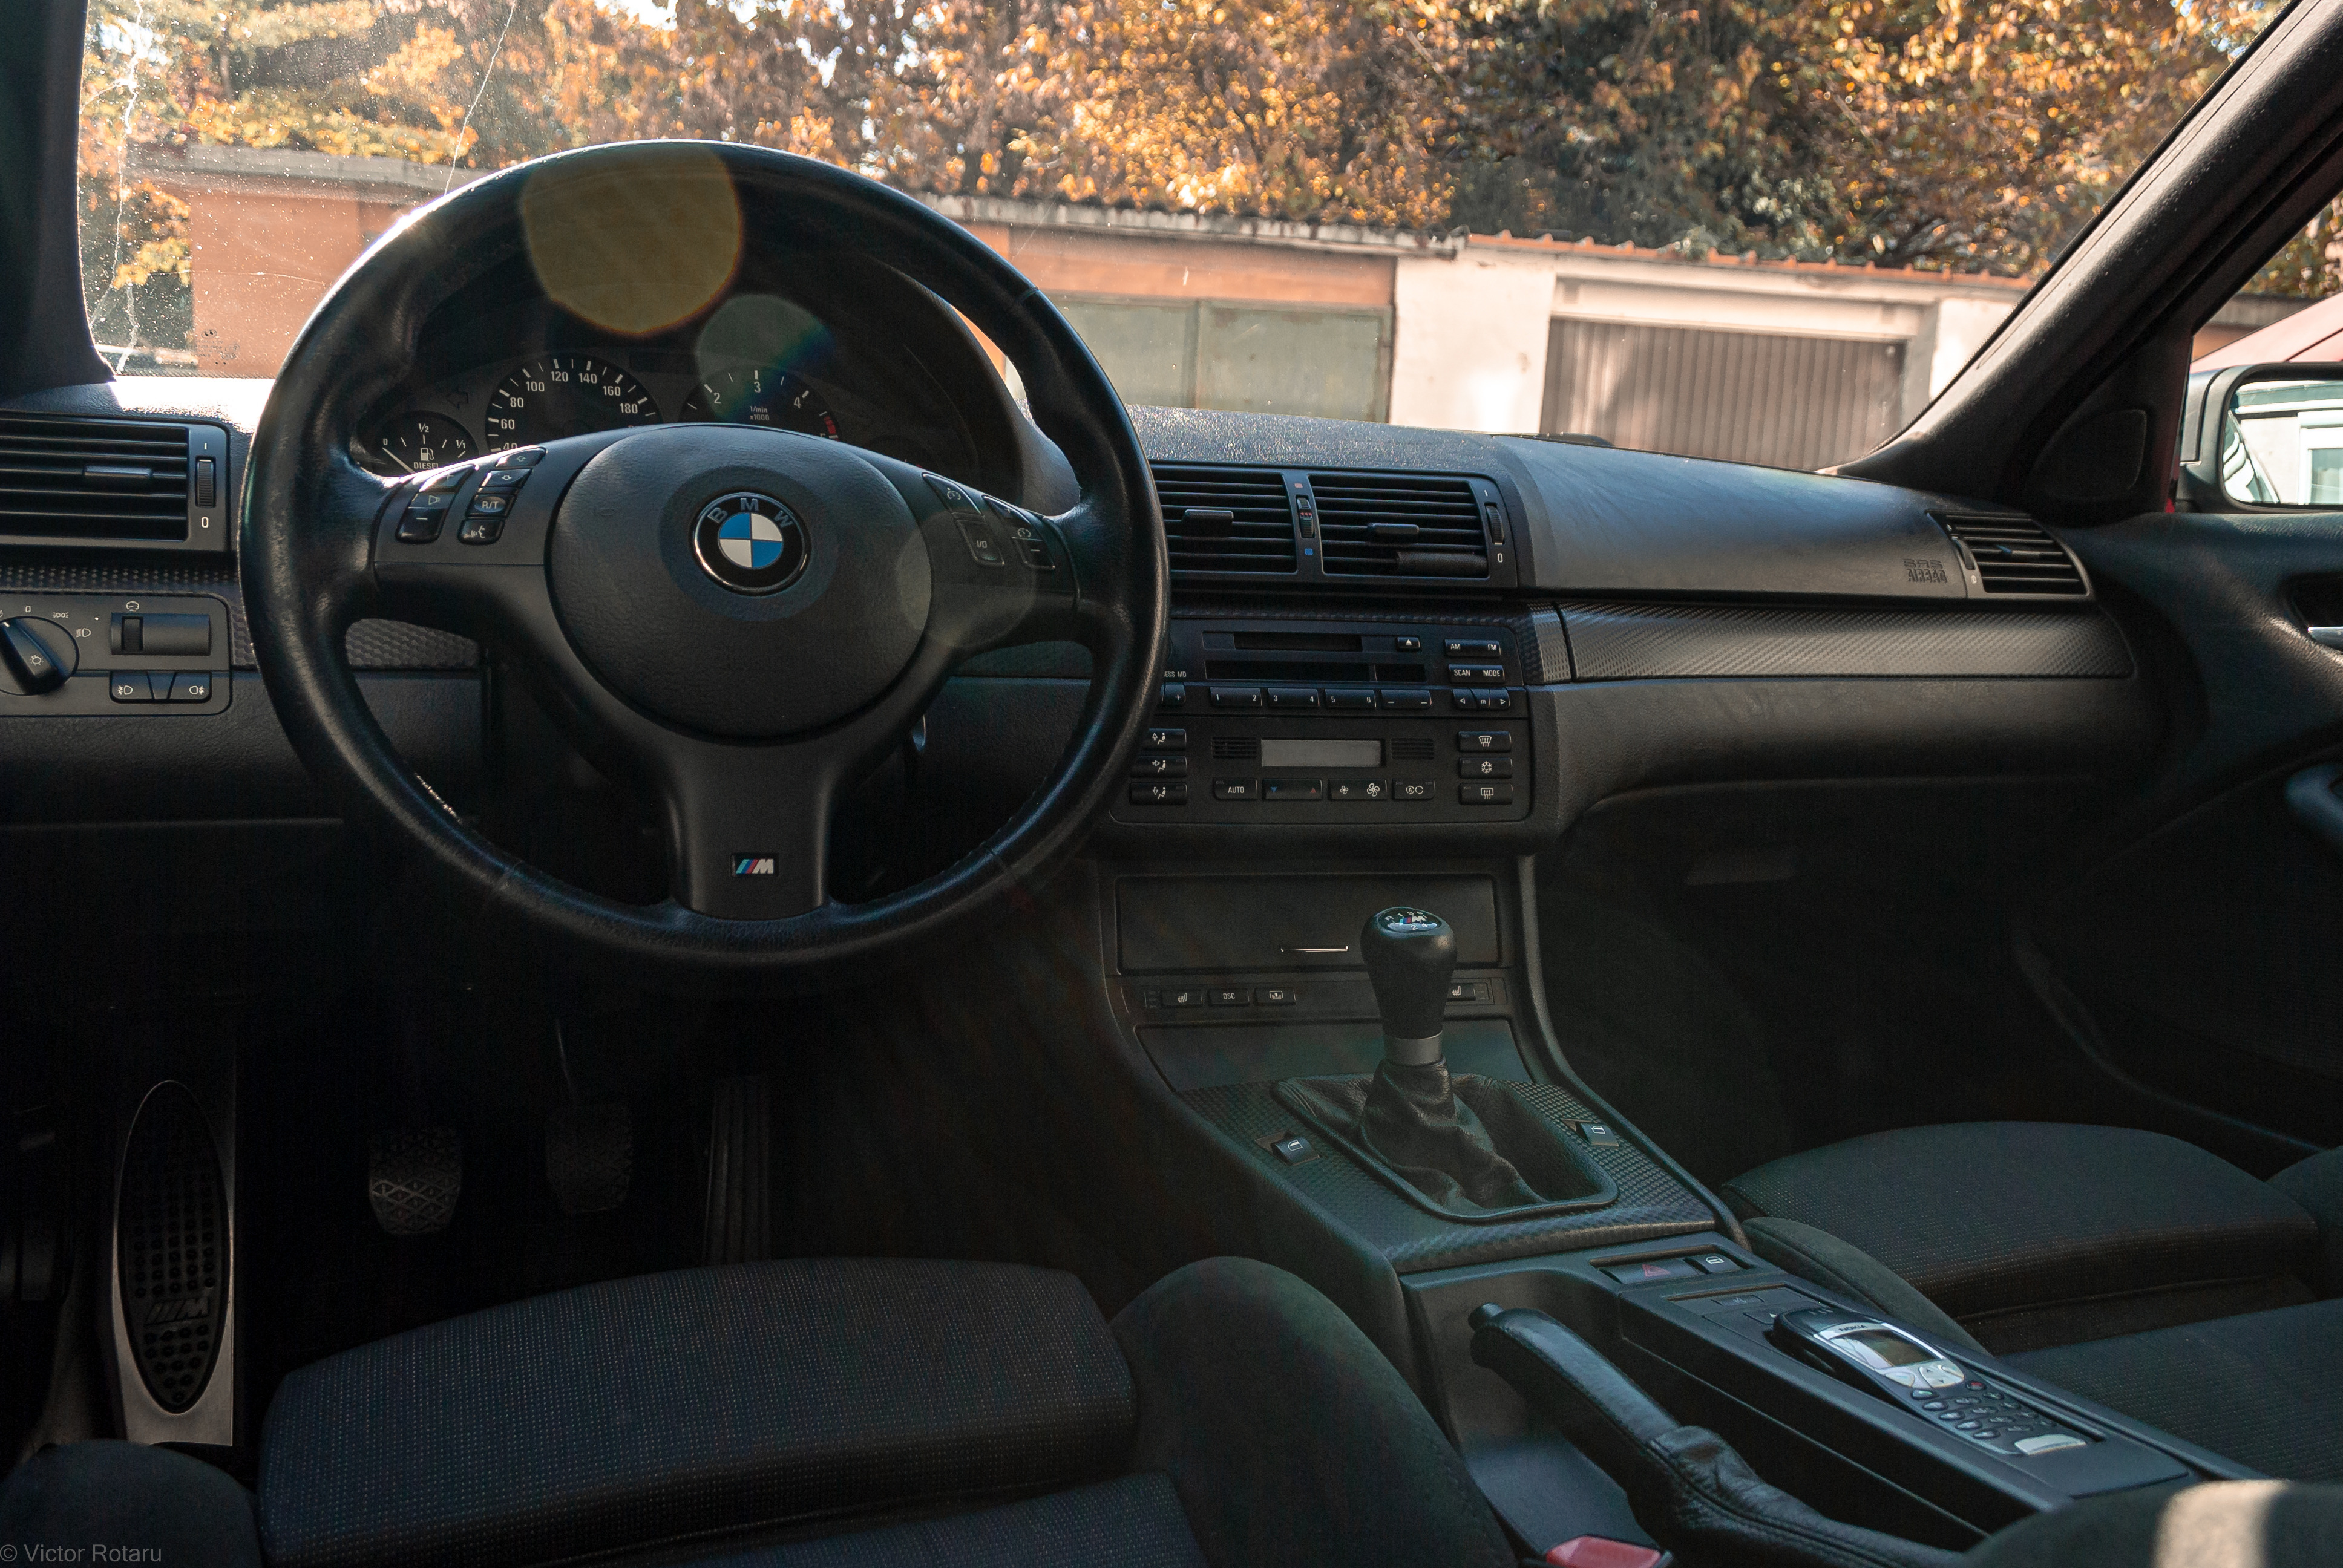 General 3872x2592 BMW BMW E46 BMW M3  steering wheel car interior BMW M GmbH